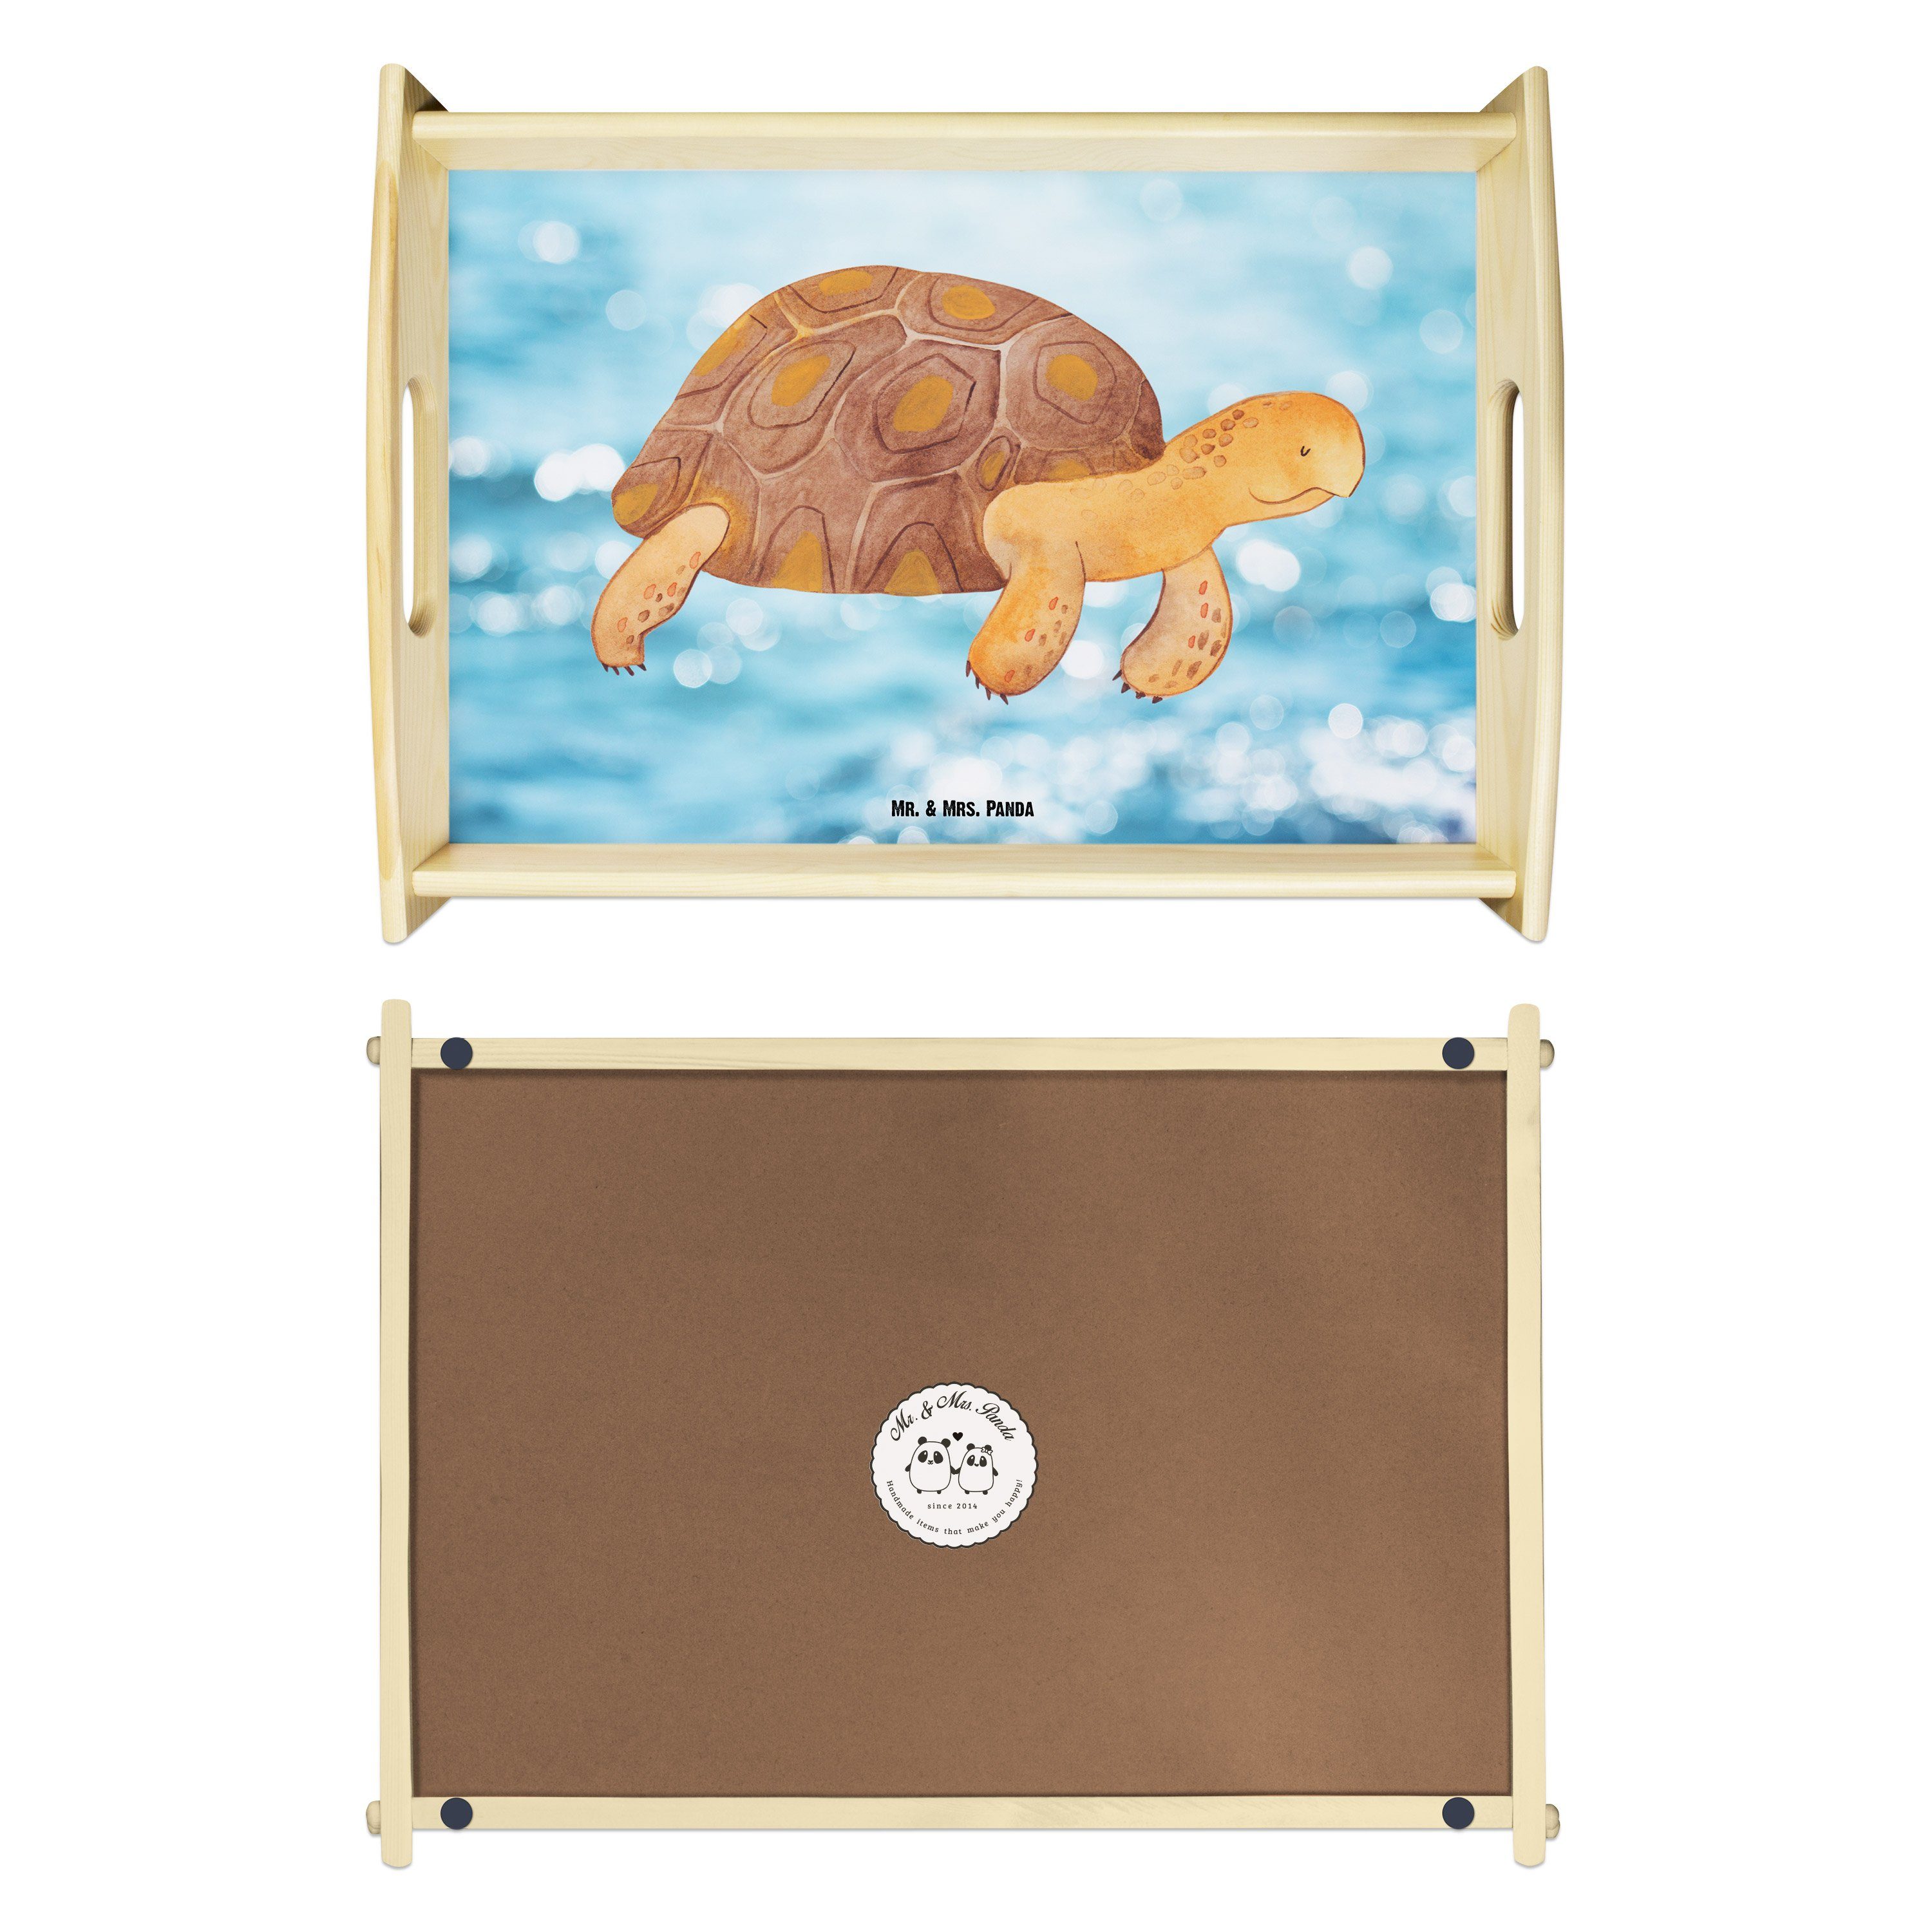 (1-tlg) Geschenk, Tablett Schildkröte los, lasiert, - get Oceanblue Küchentablett, - & Panda marschiert Echtholz Mr. Mrs.